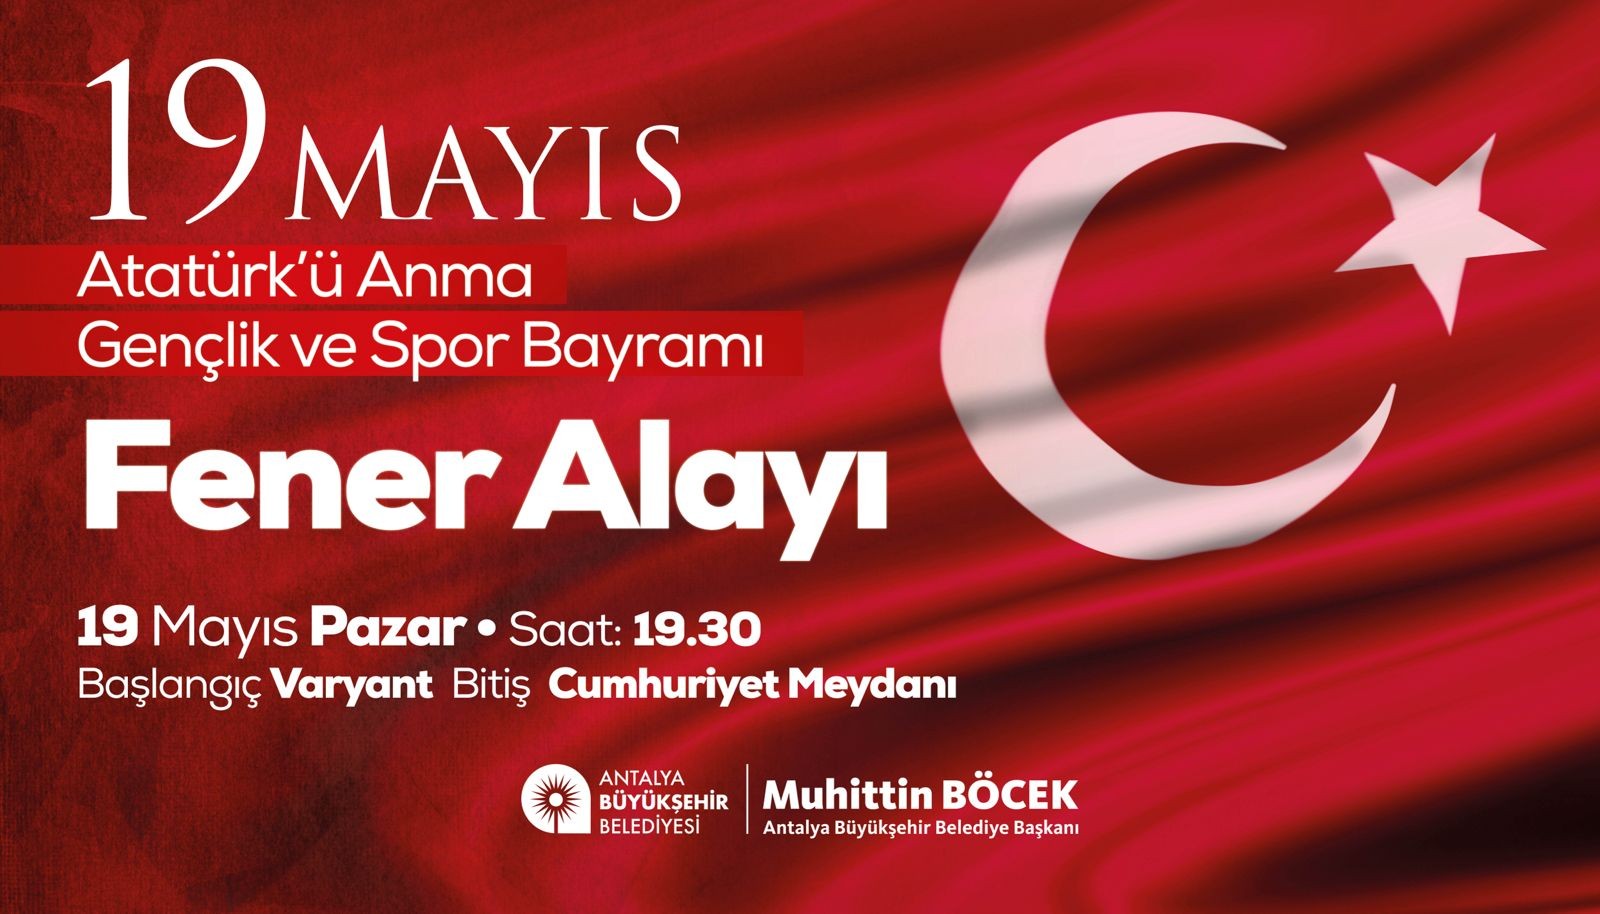 Antalya Büyükşehir Belediyesi 19 Mayıs’ı coşkuyla kutlayacak